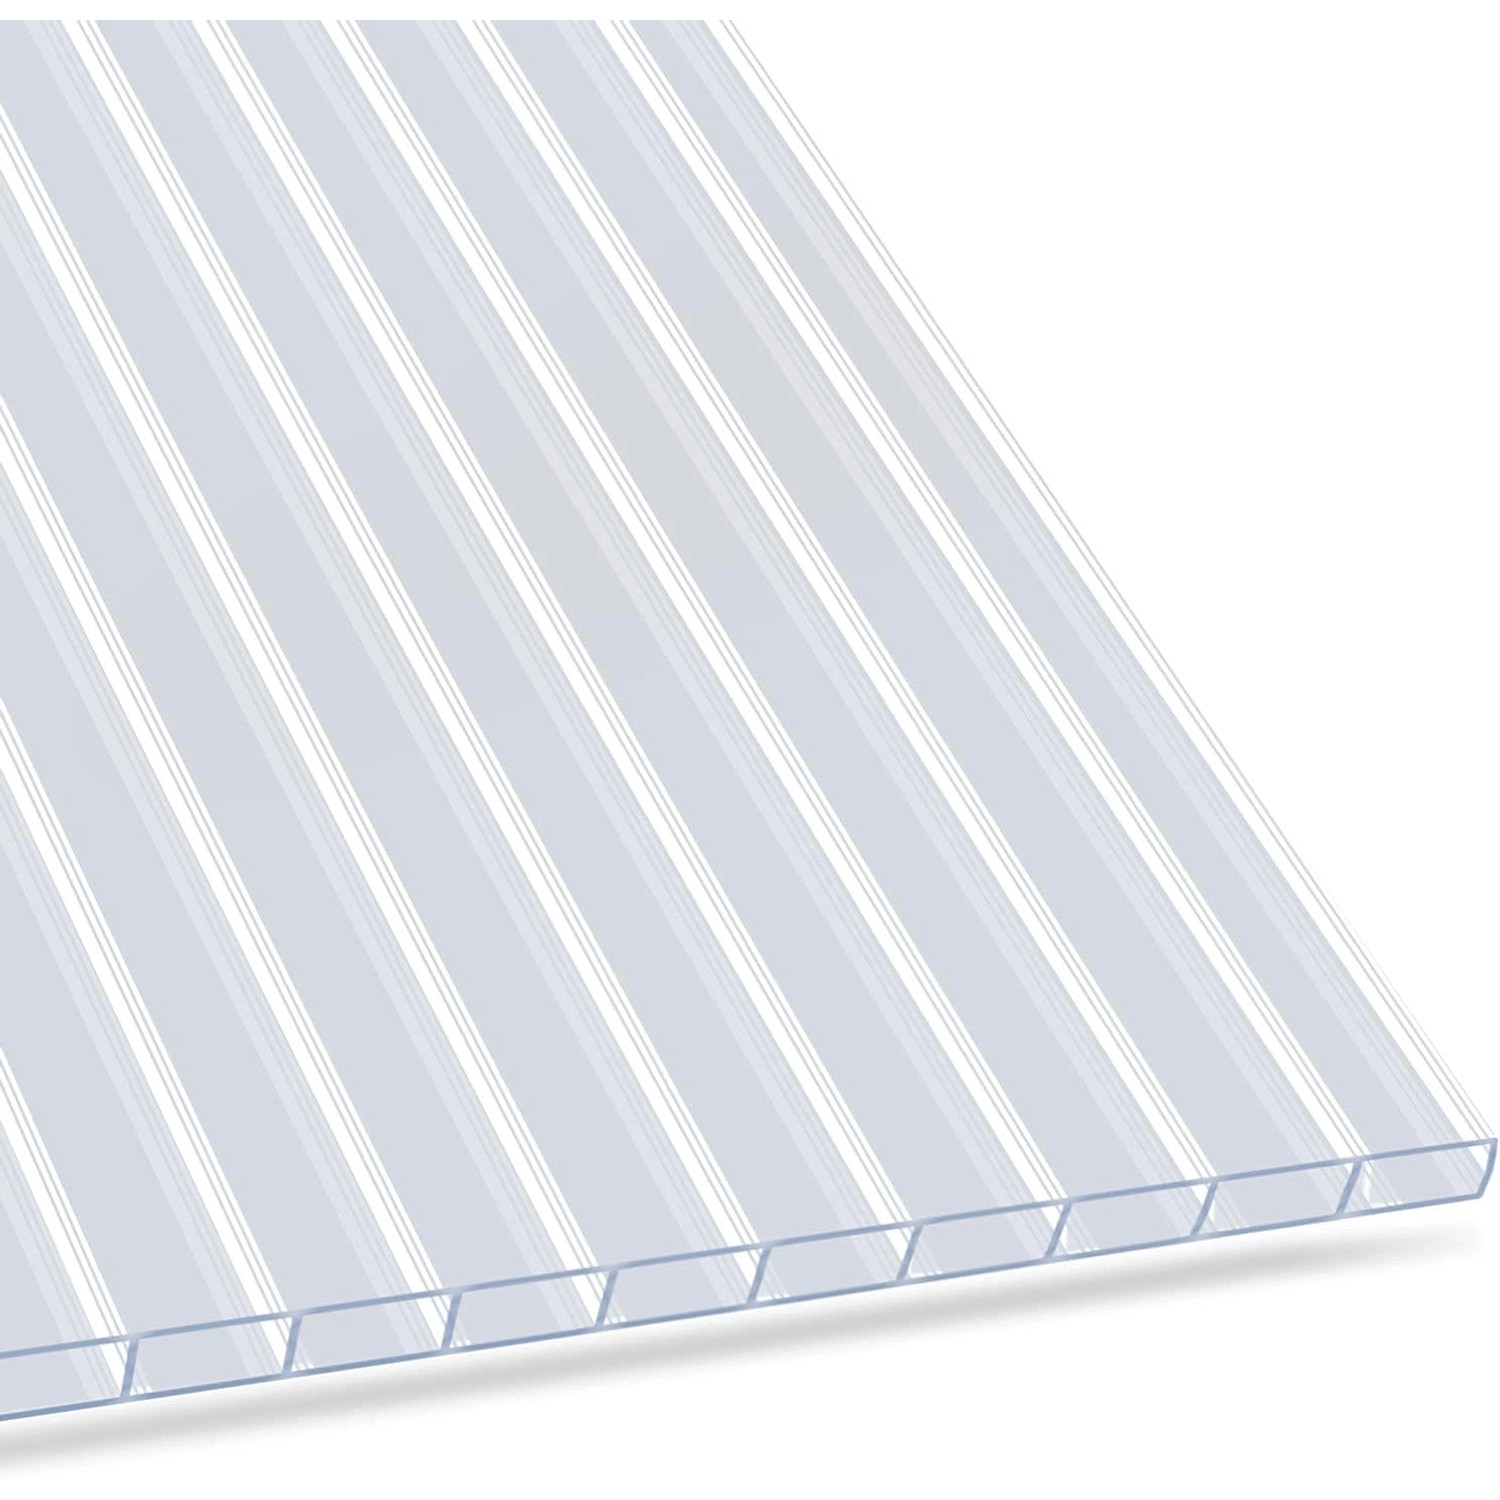 KARAT Doppelstegplatte aus Polycarbonat 60,5 x 121 cm transparent - Stegplatte für Gewächshäuser - 4 mm Stärke